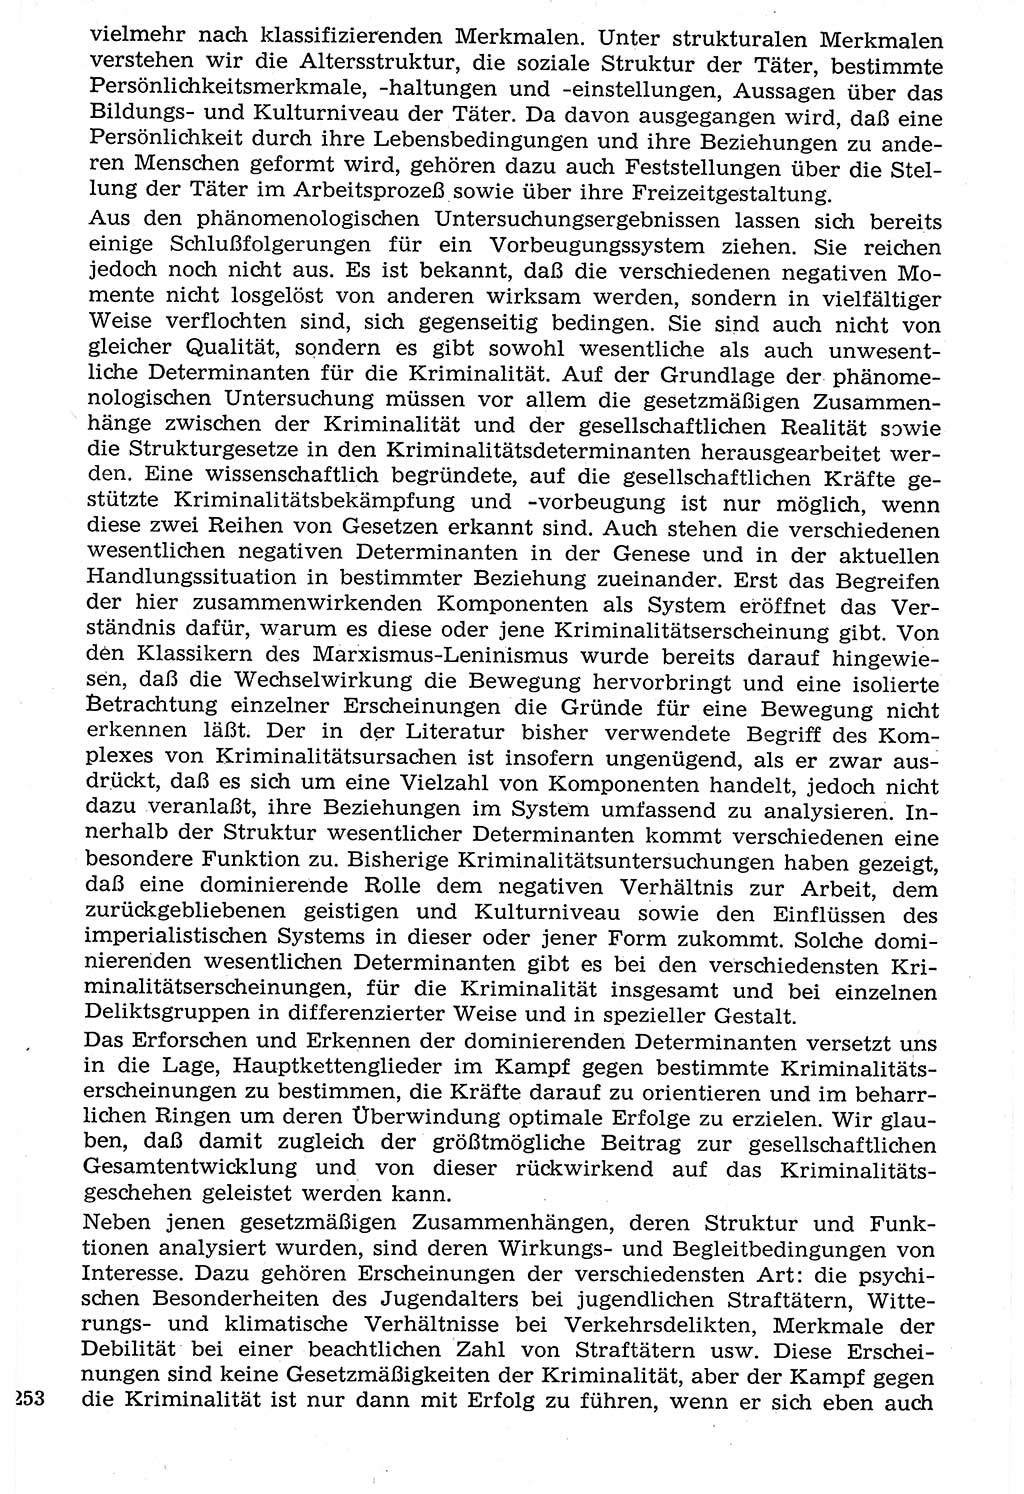 Staat und Recht (StuR), 17. Jahrgang [Deutsche Demokratische Republik (DDR)] 1968, Seite 253 (StuR DDR 1968, S. 253)